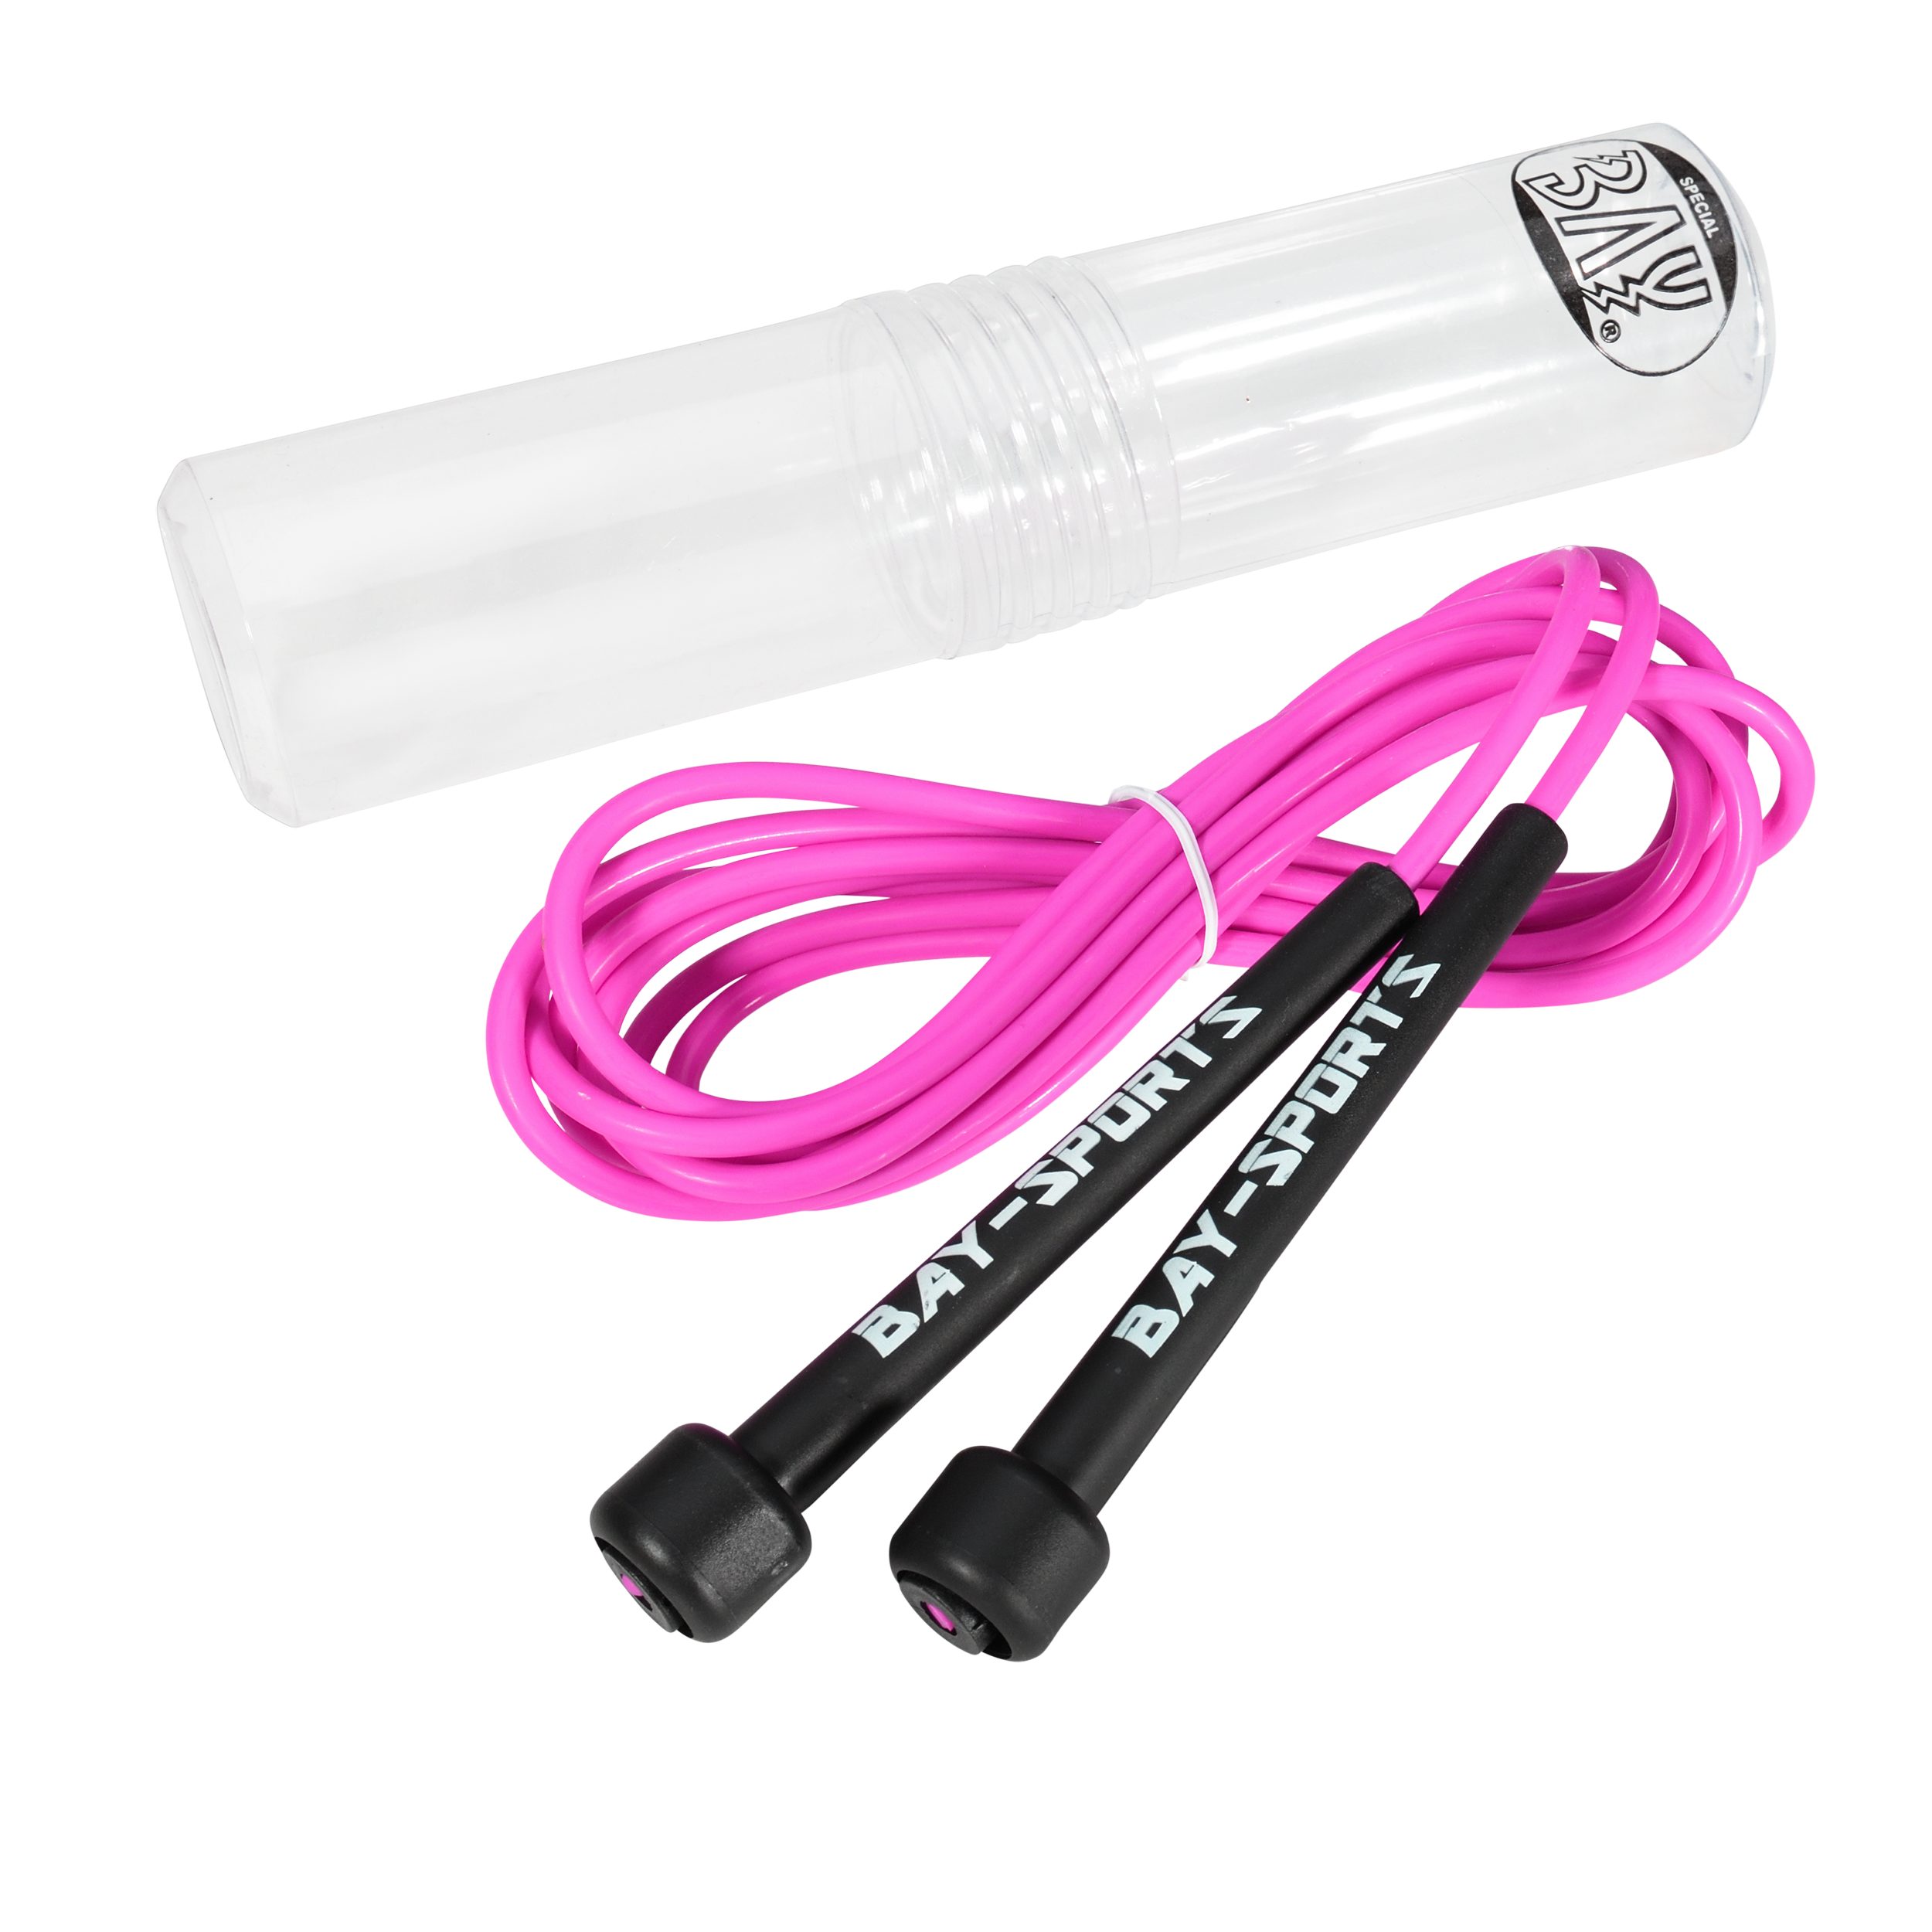 BAY-Sports Springseil High Speed Nylon Sprungseil pink rosa Hüpfseil Skipping Rope Adult, Stufenlos Längenverstellbar - Leicht und ergonomisch